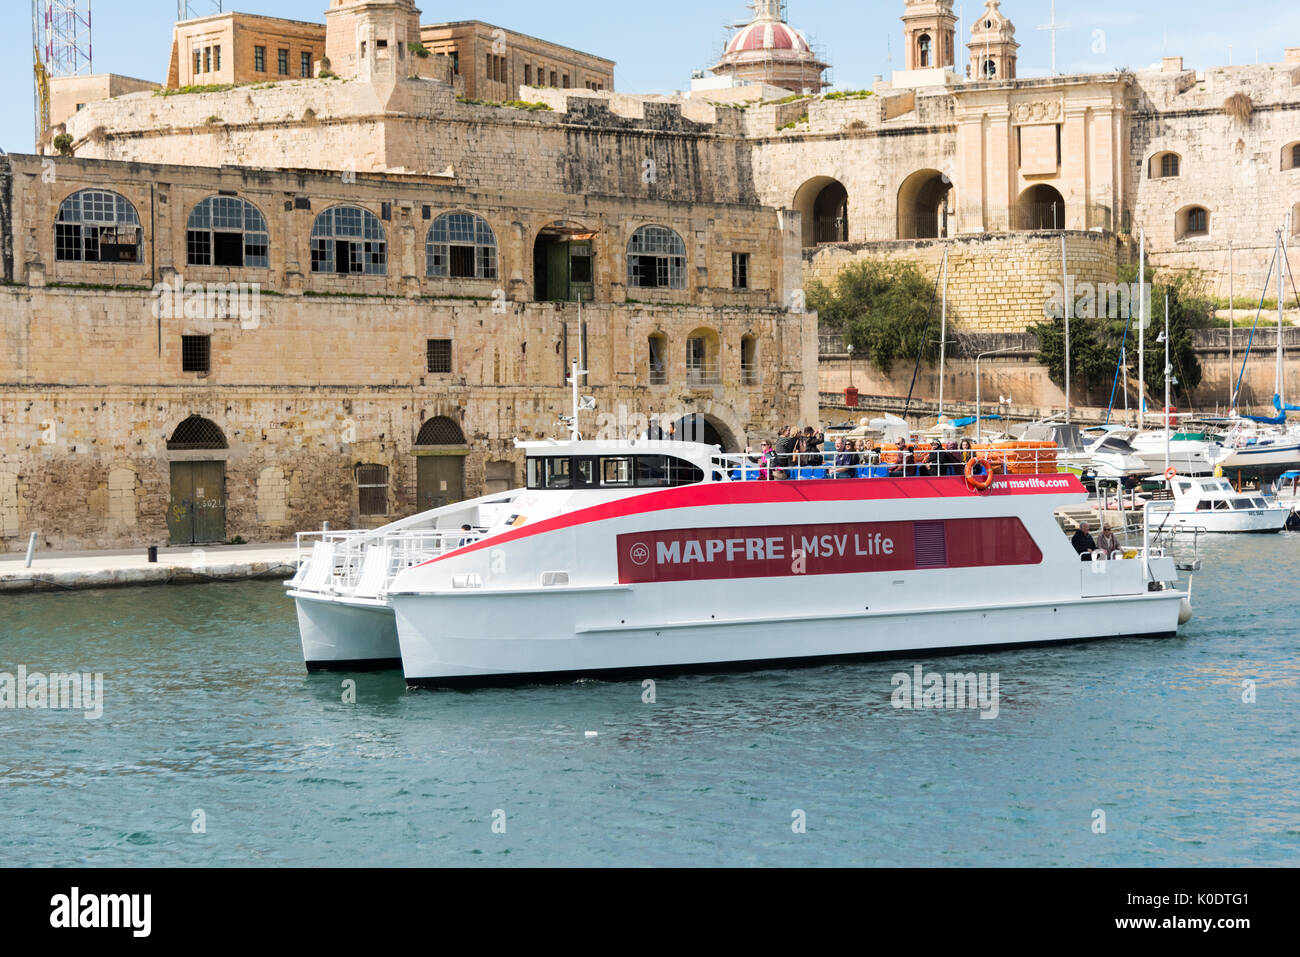 A Mapfre ferry boat in Valetta Grand Harbour Malta Stock Photo